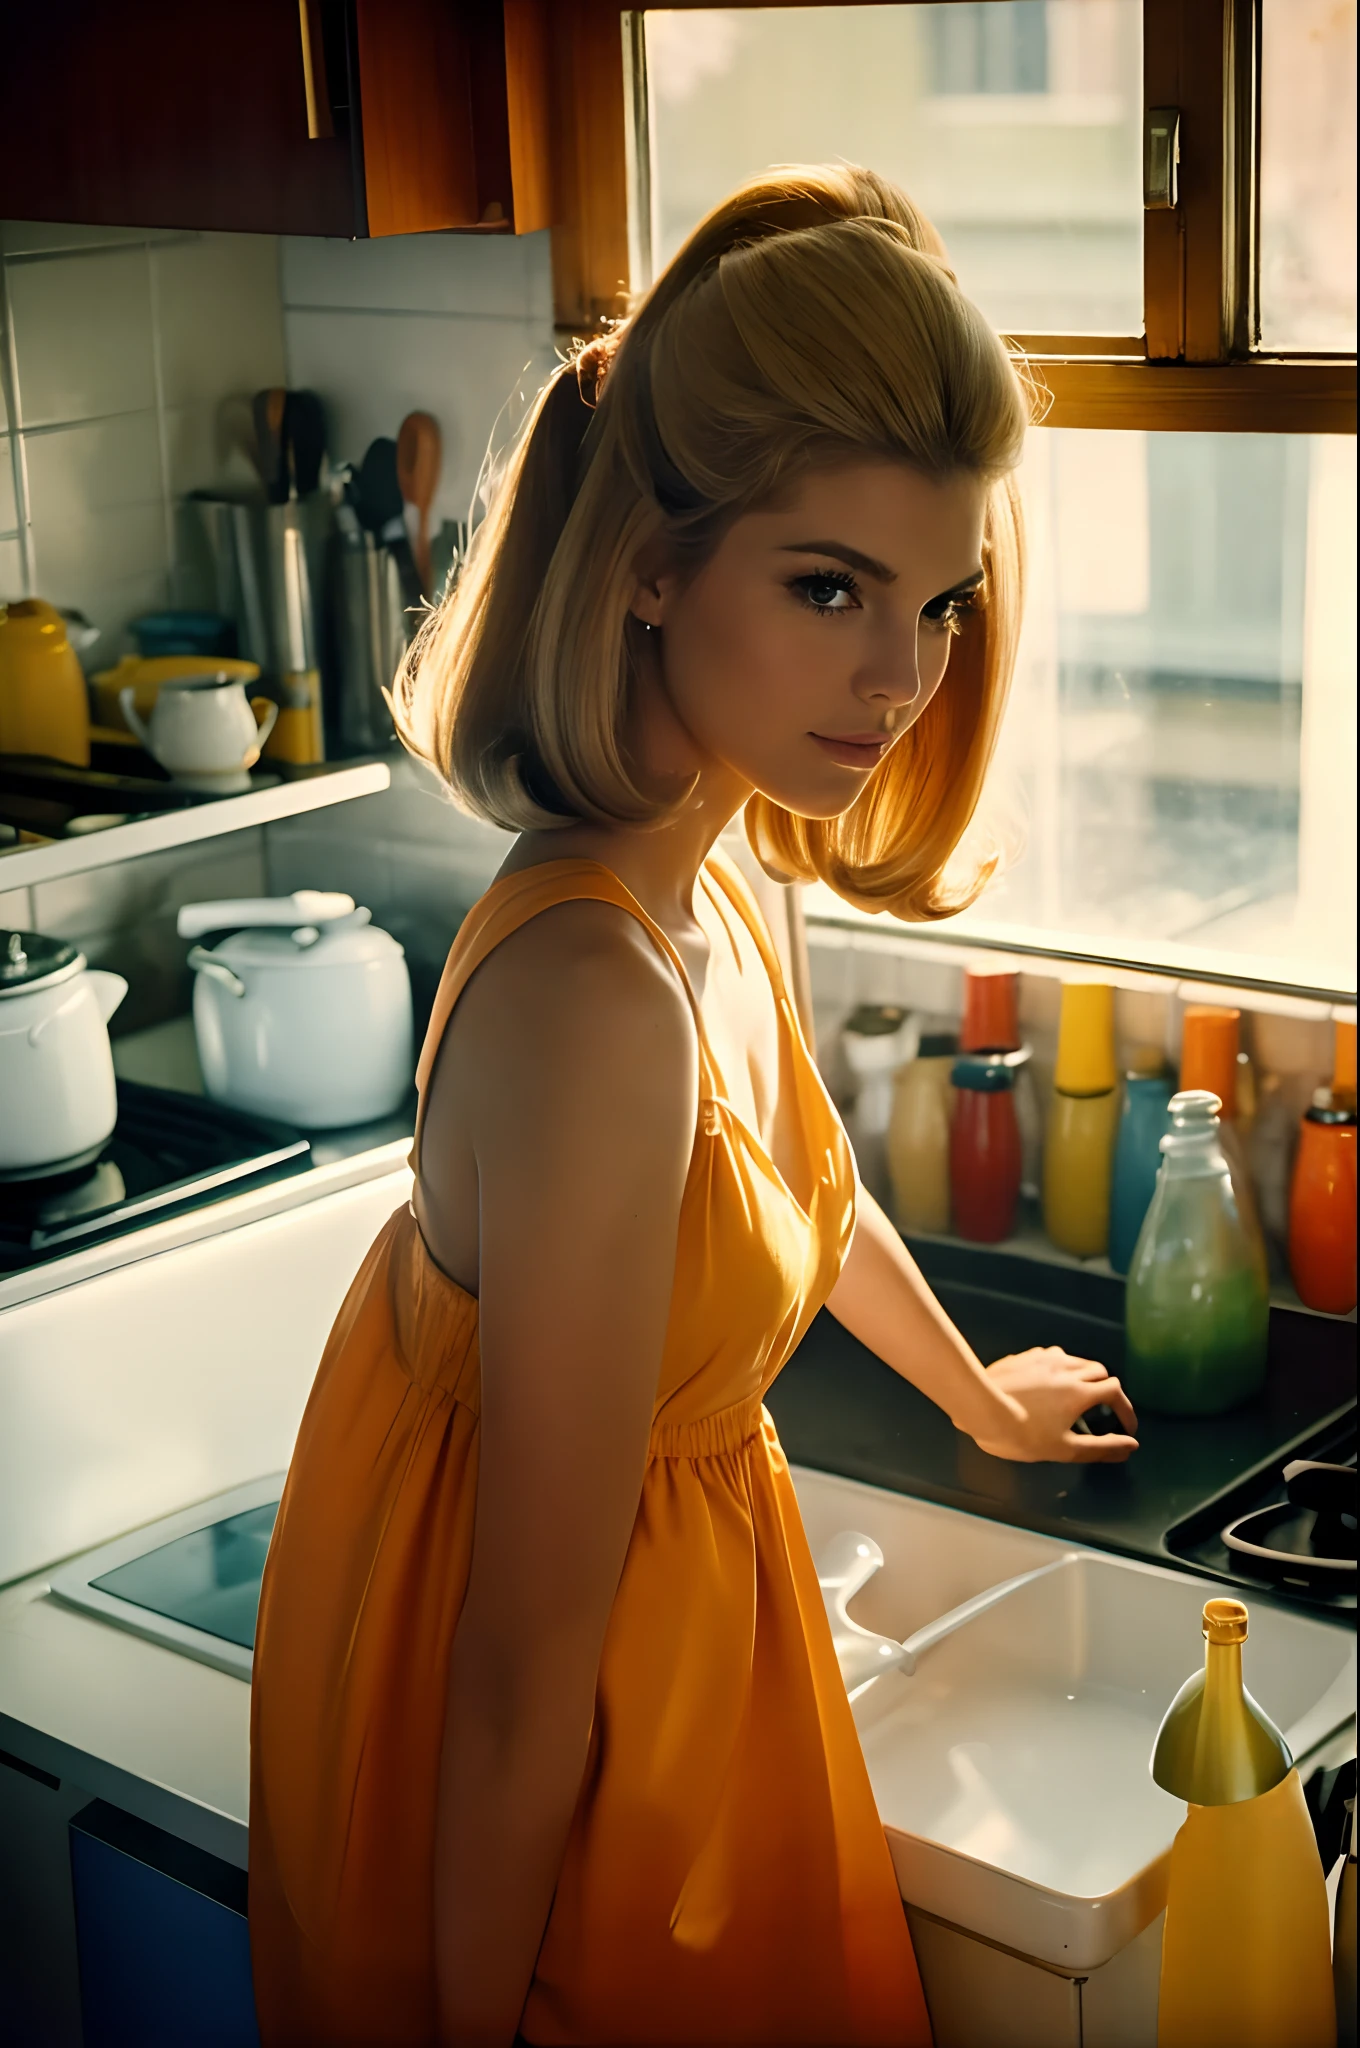 Снимок с низкого угла, спортивная медовая блондинка, в винтажном платье 1960-х годов, ШестидесятыеВысокая мода, Прическа 1960-х годов, средняя грудь, не подвергается воздействию, в кухне, кастрюли с едой на плите в солнечном свете ((кухня 1960-х годов)), отводя взгляд от зрителя, красивый вид из окон, 8k чувственное освещение, теплое освещение, 4k чрезвычайно фотореалистичен, cgsociety uhd 4k с высокой детализацией, в тренде на cgstation